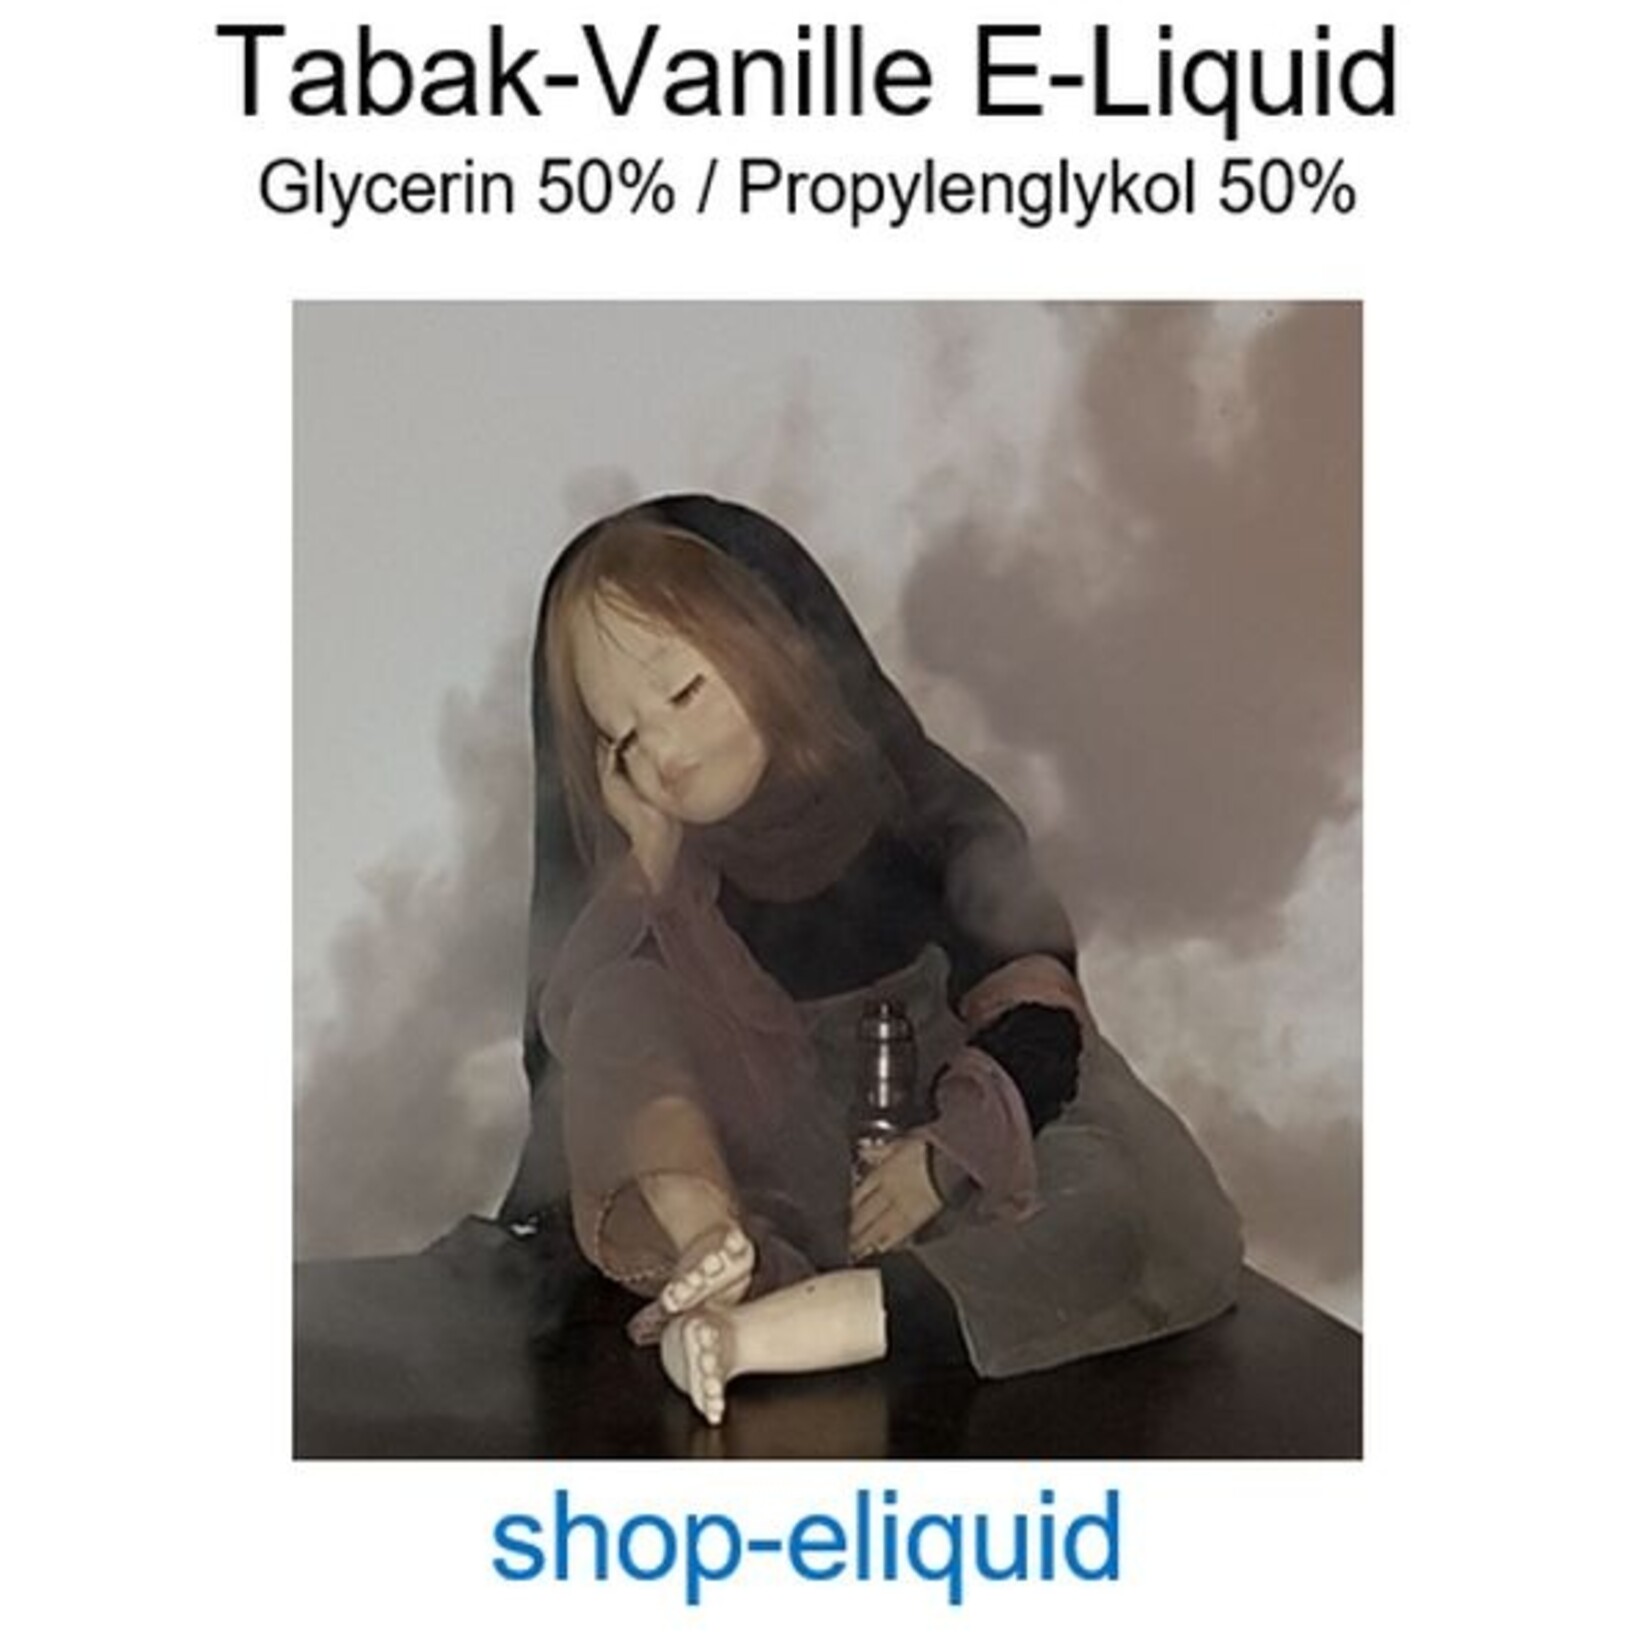 shop-eliquid Tabak-Vanille E-Liquid